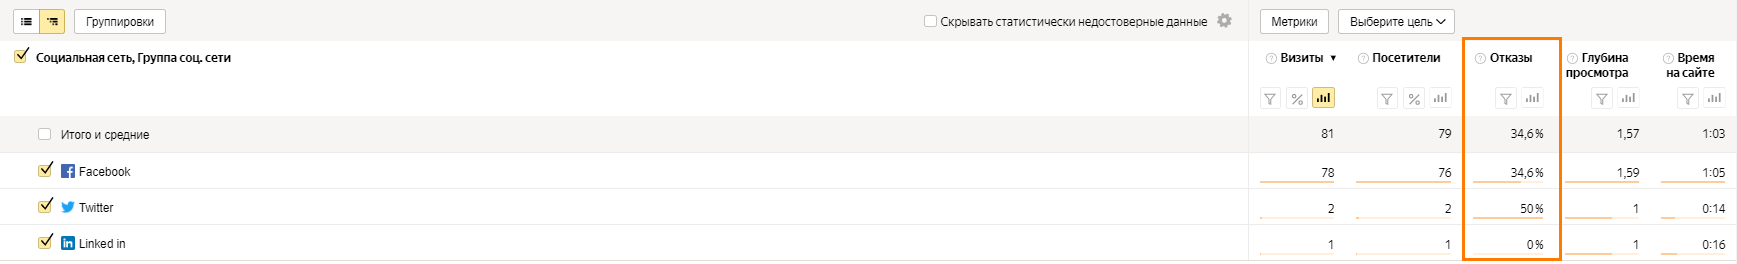 Данные по отказам в Яндекс Метрике доступны в отчете «Социальные сети»